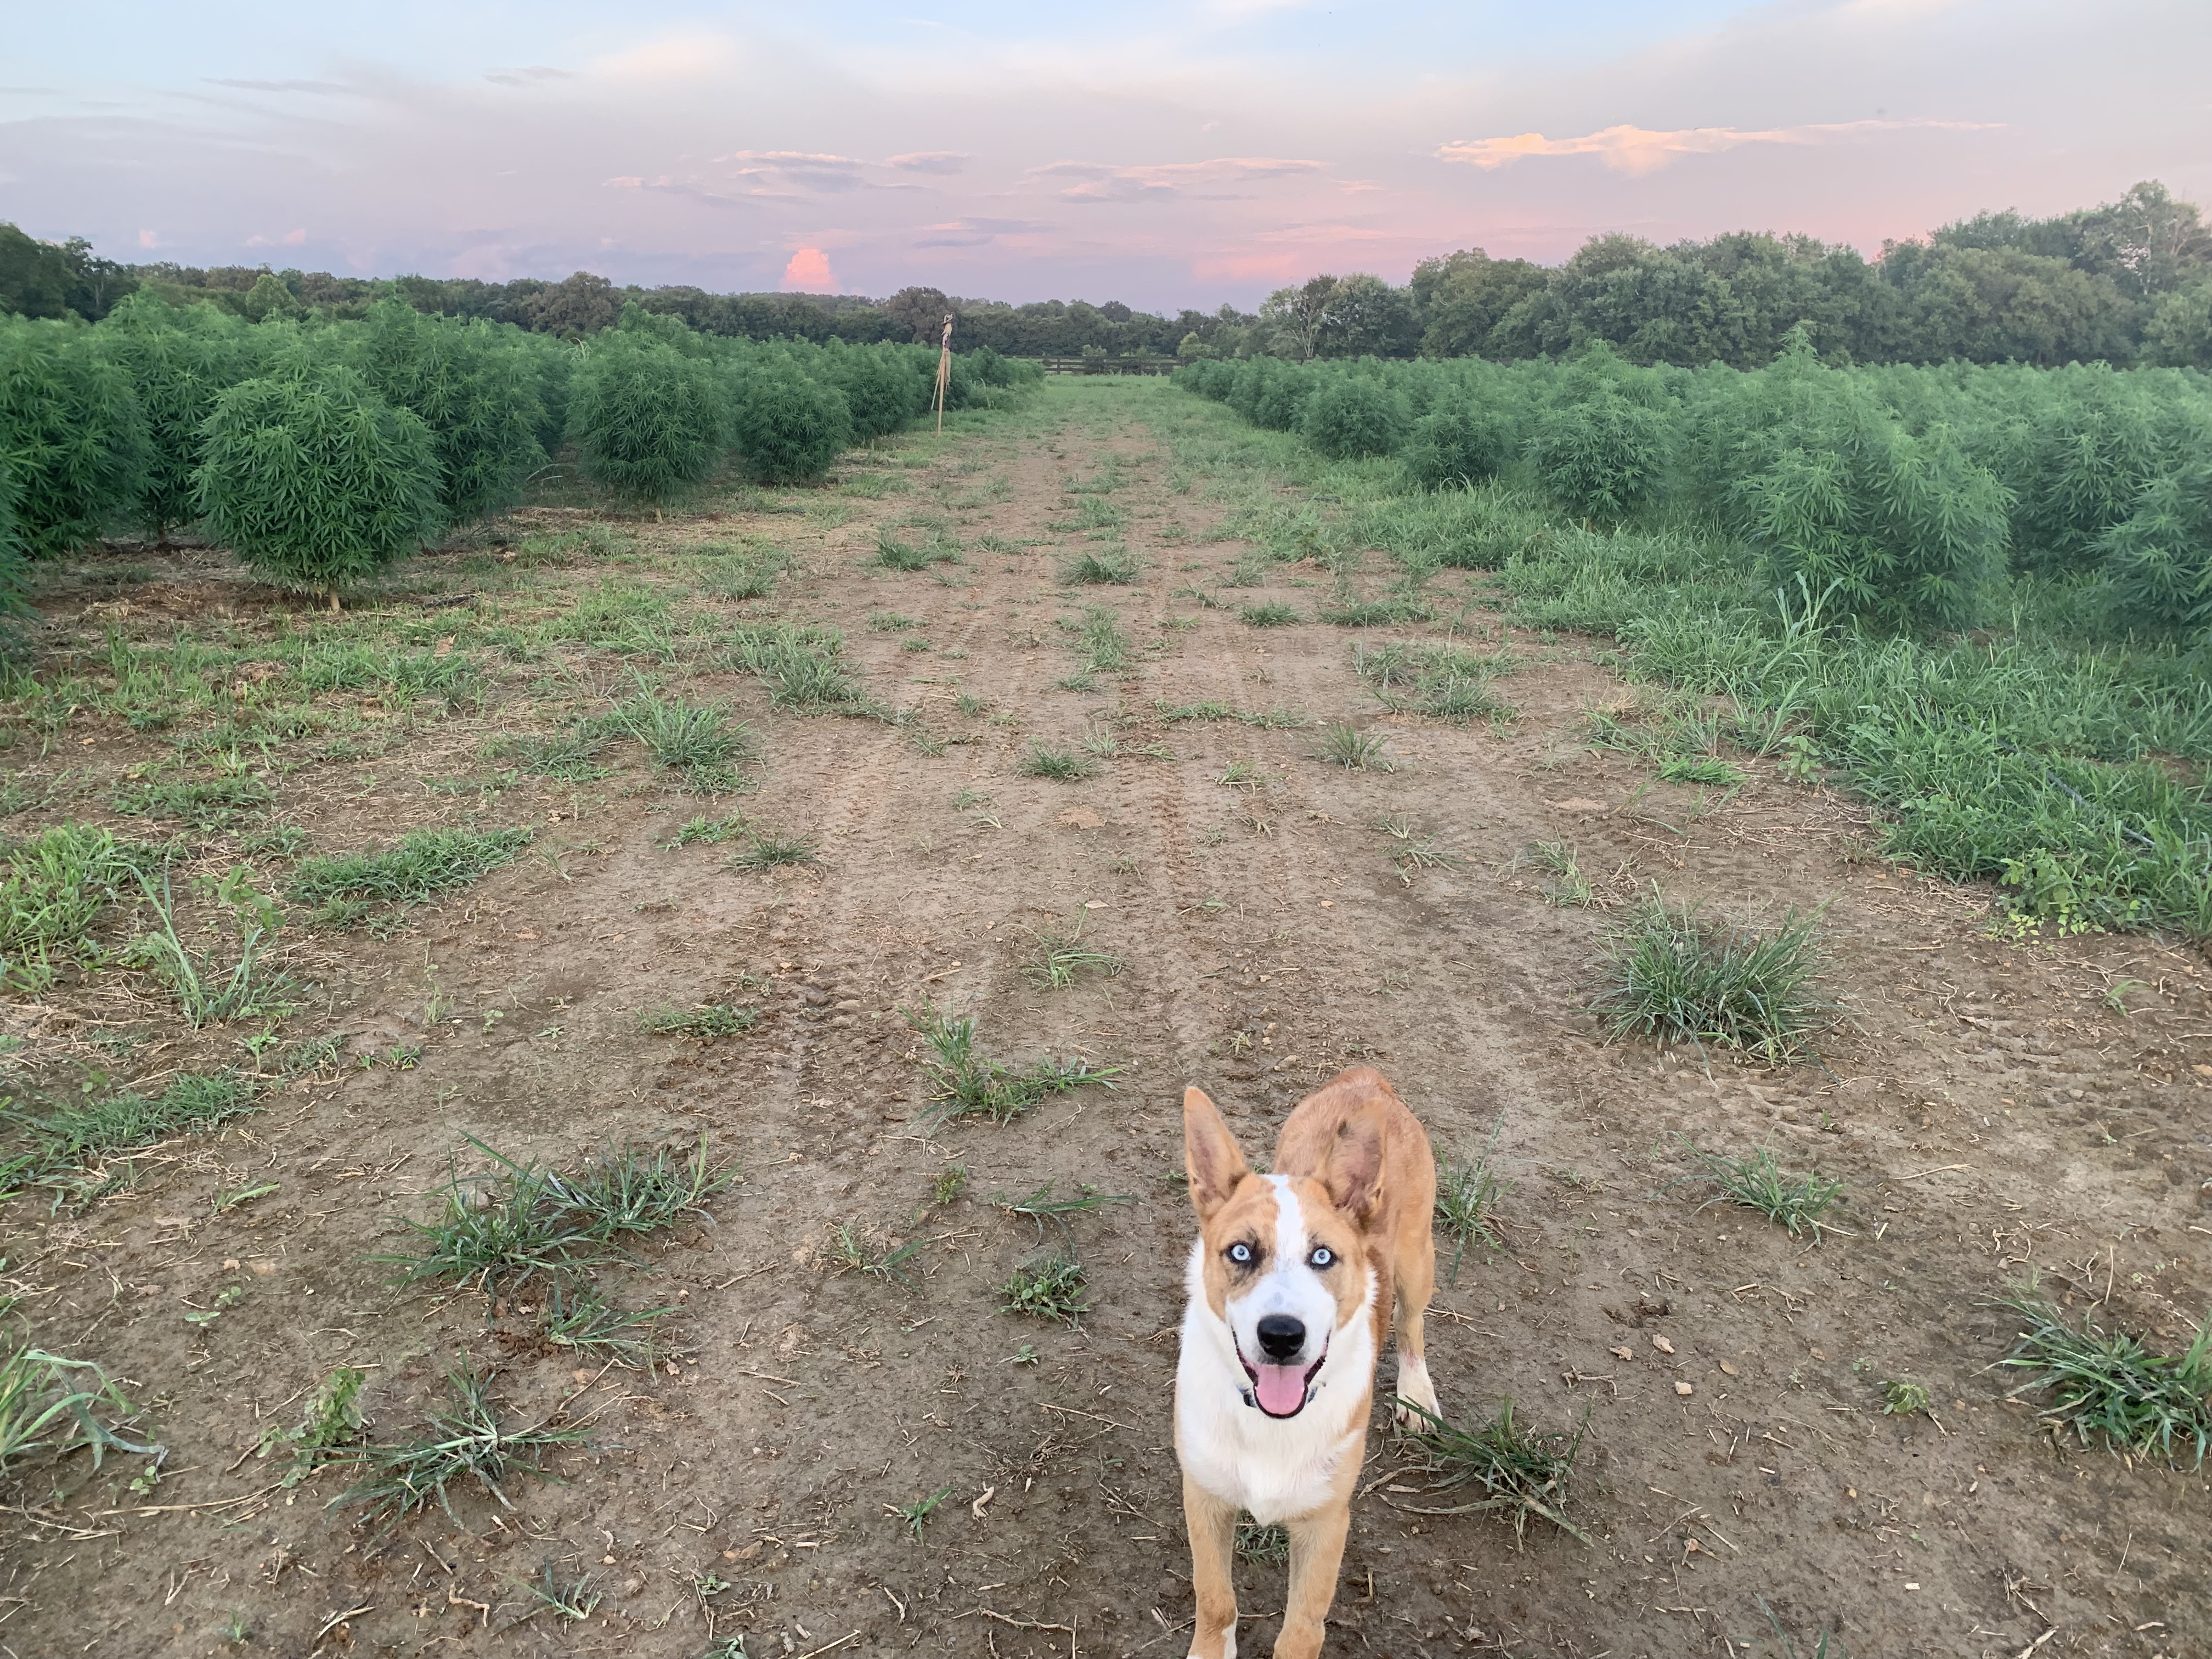 Bluey in the hemp field, 2019